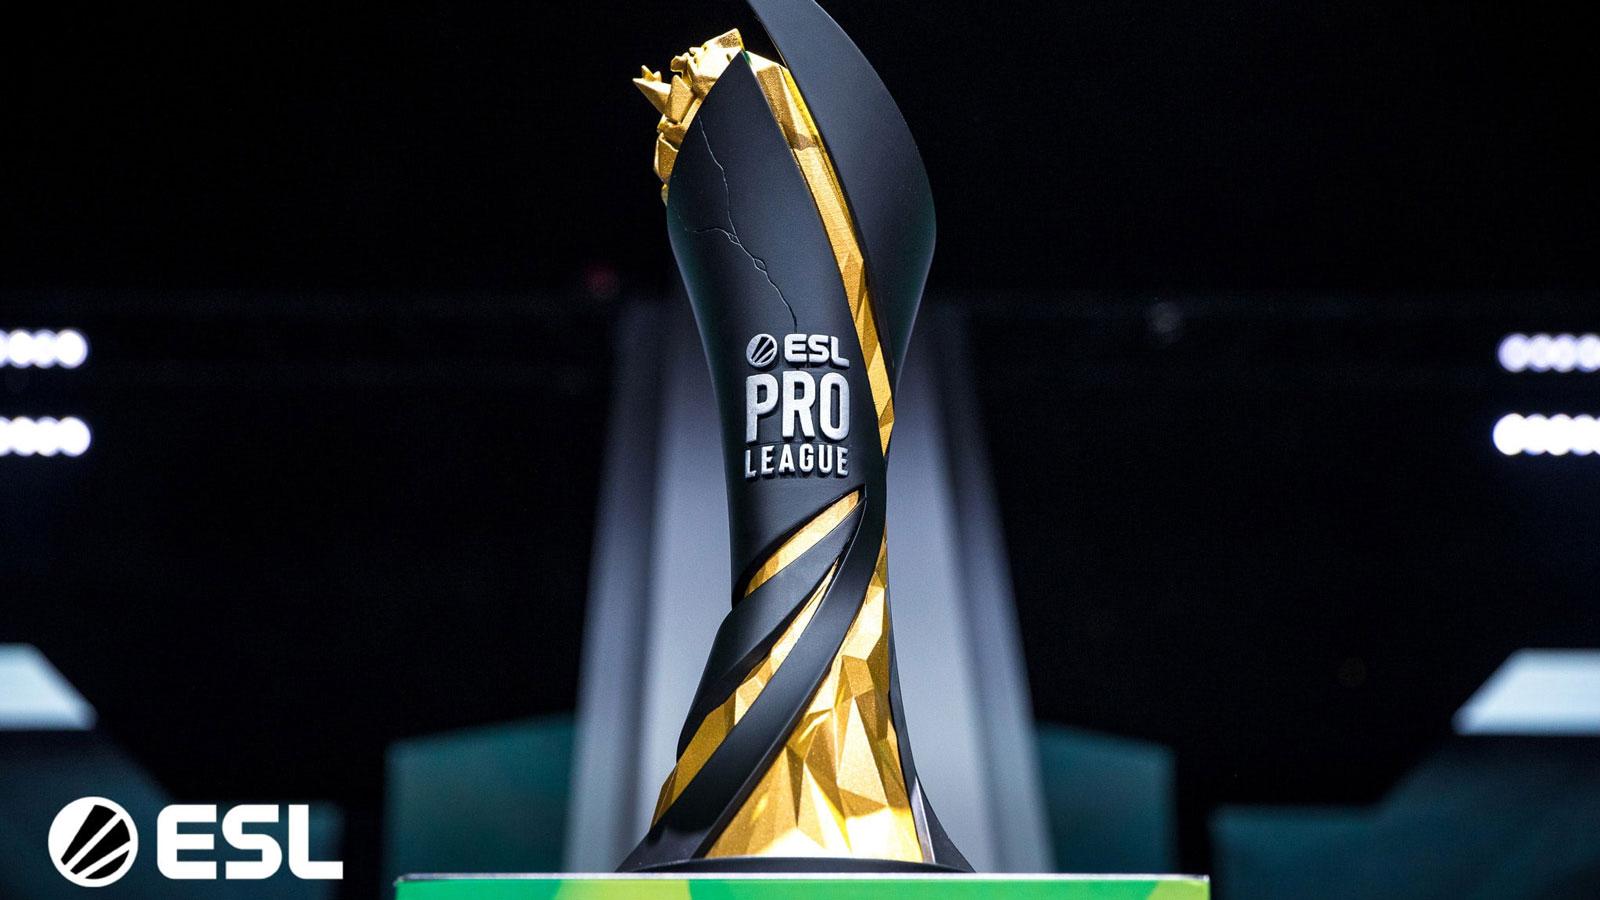 ESL Pro League trophy